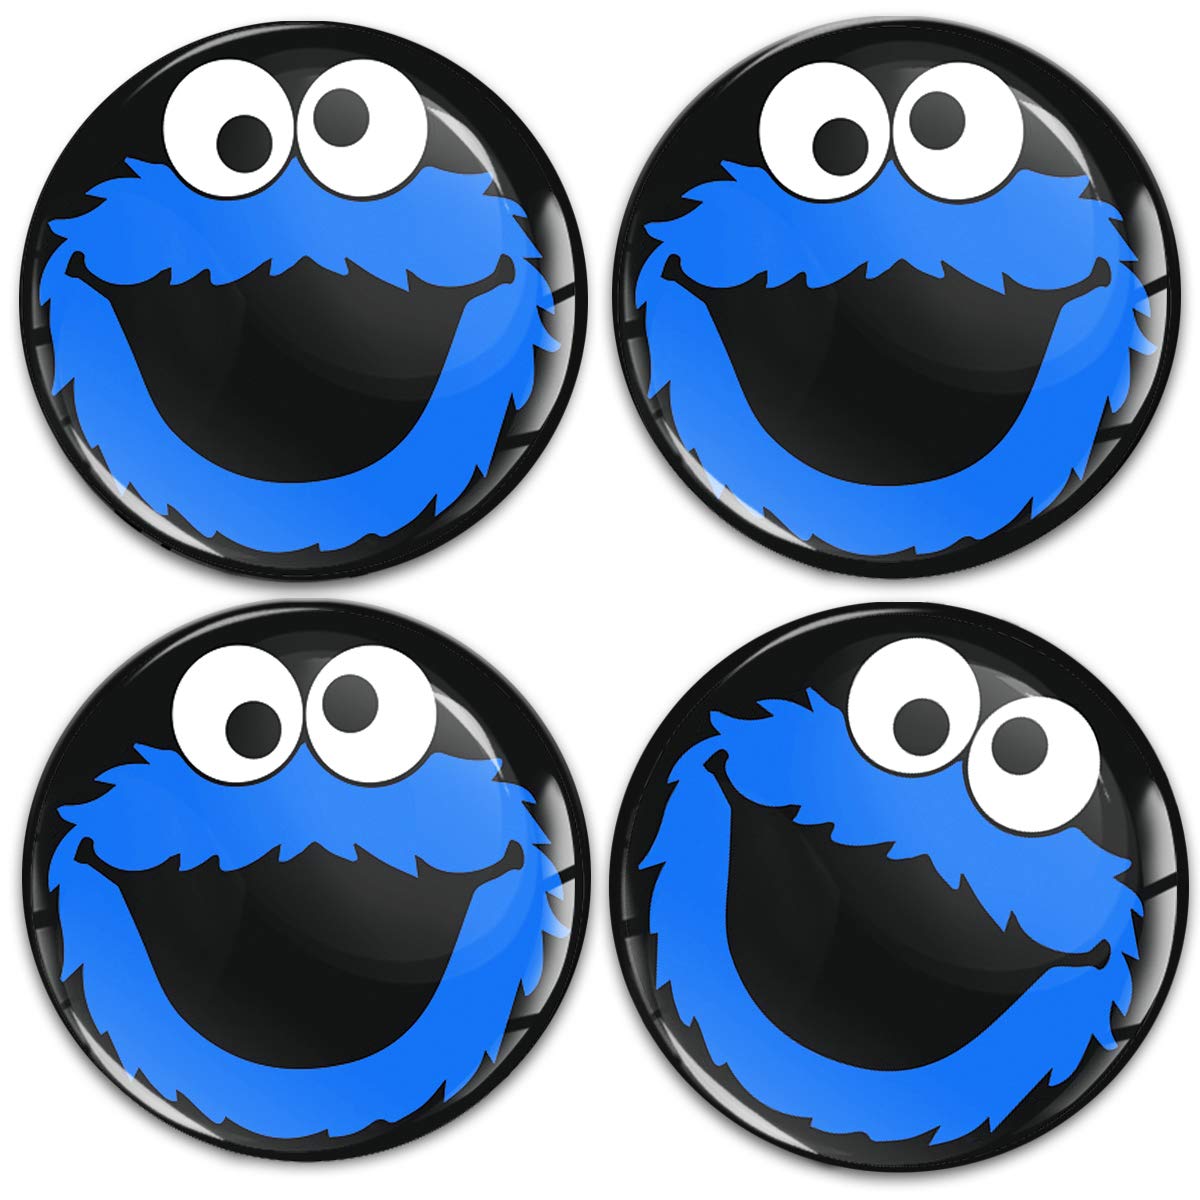 SkinoEu Aufkleber Autoaufkleber für Radkappen Nabenkappen Nabendeckel Radnabendeckel Rad-Aufkleber 70mm Schwarz Blau Elmo Cookie Monster A 5870 von SkinoEu